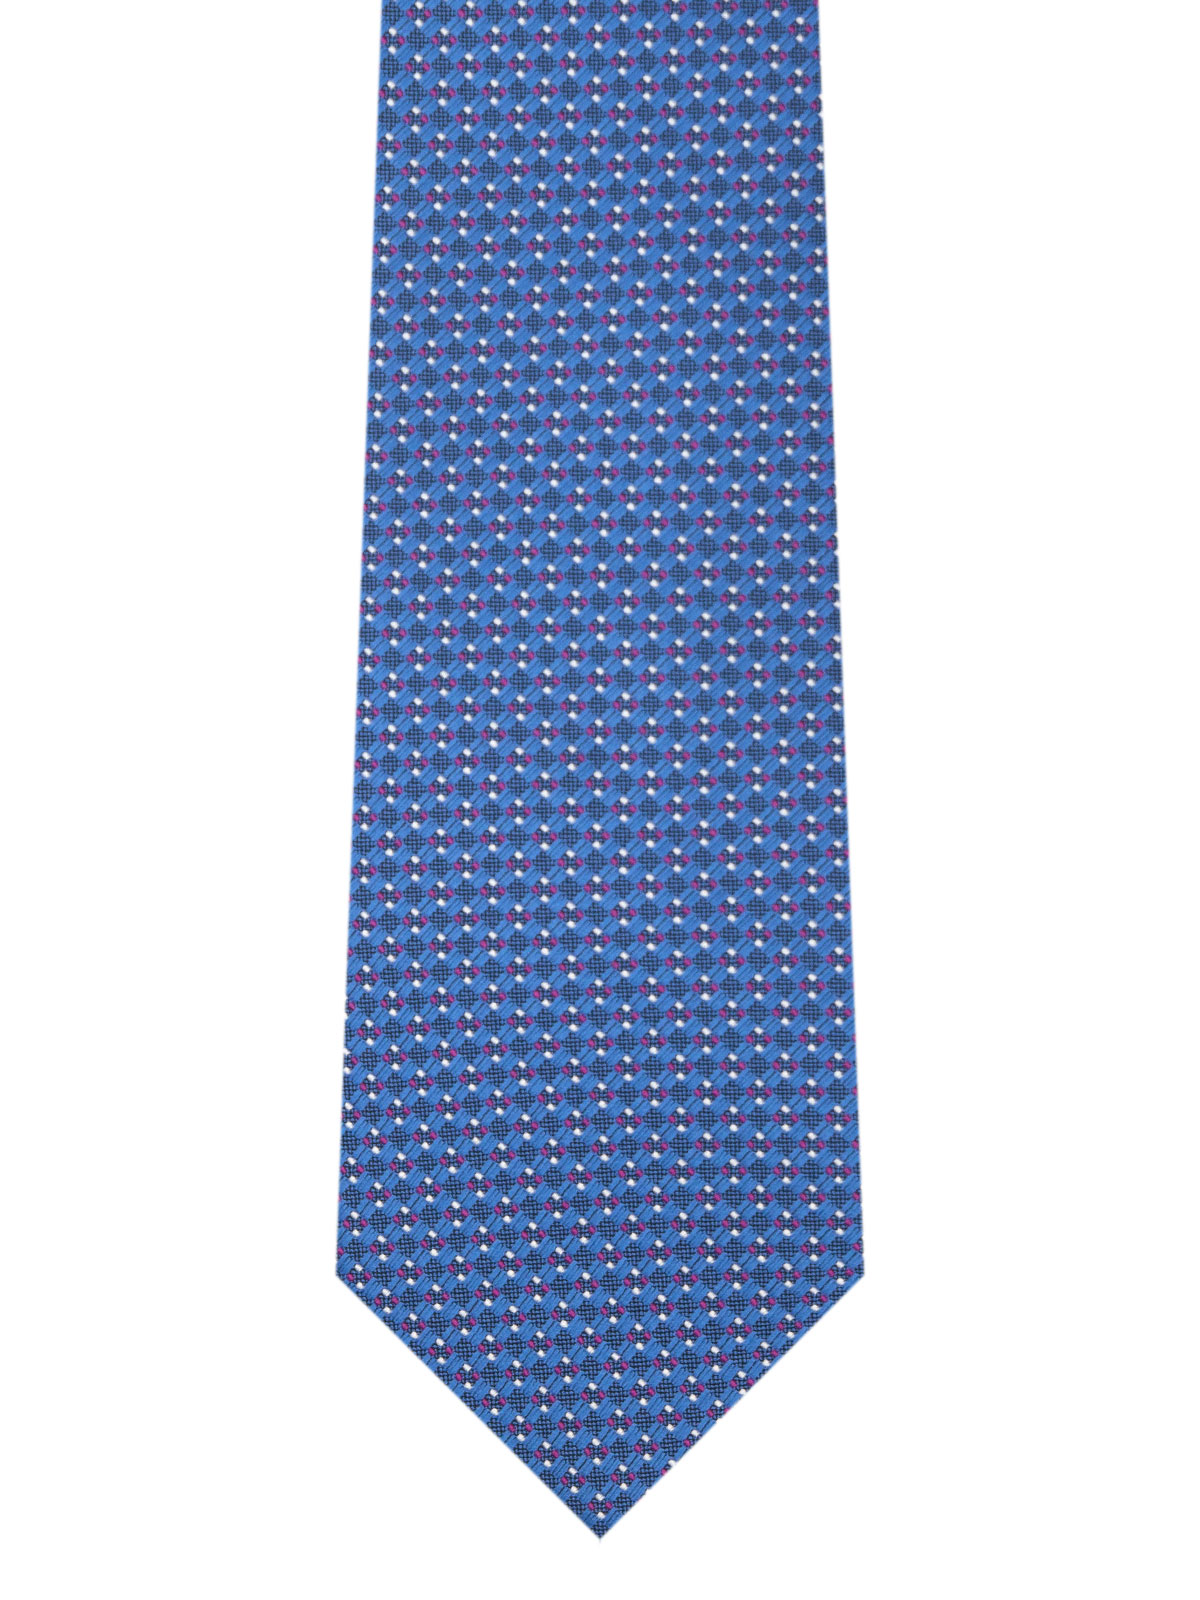 Cravată în albastru cu figuri mov - 10194 - € 14.06 img2